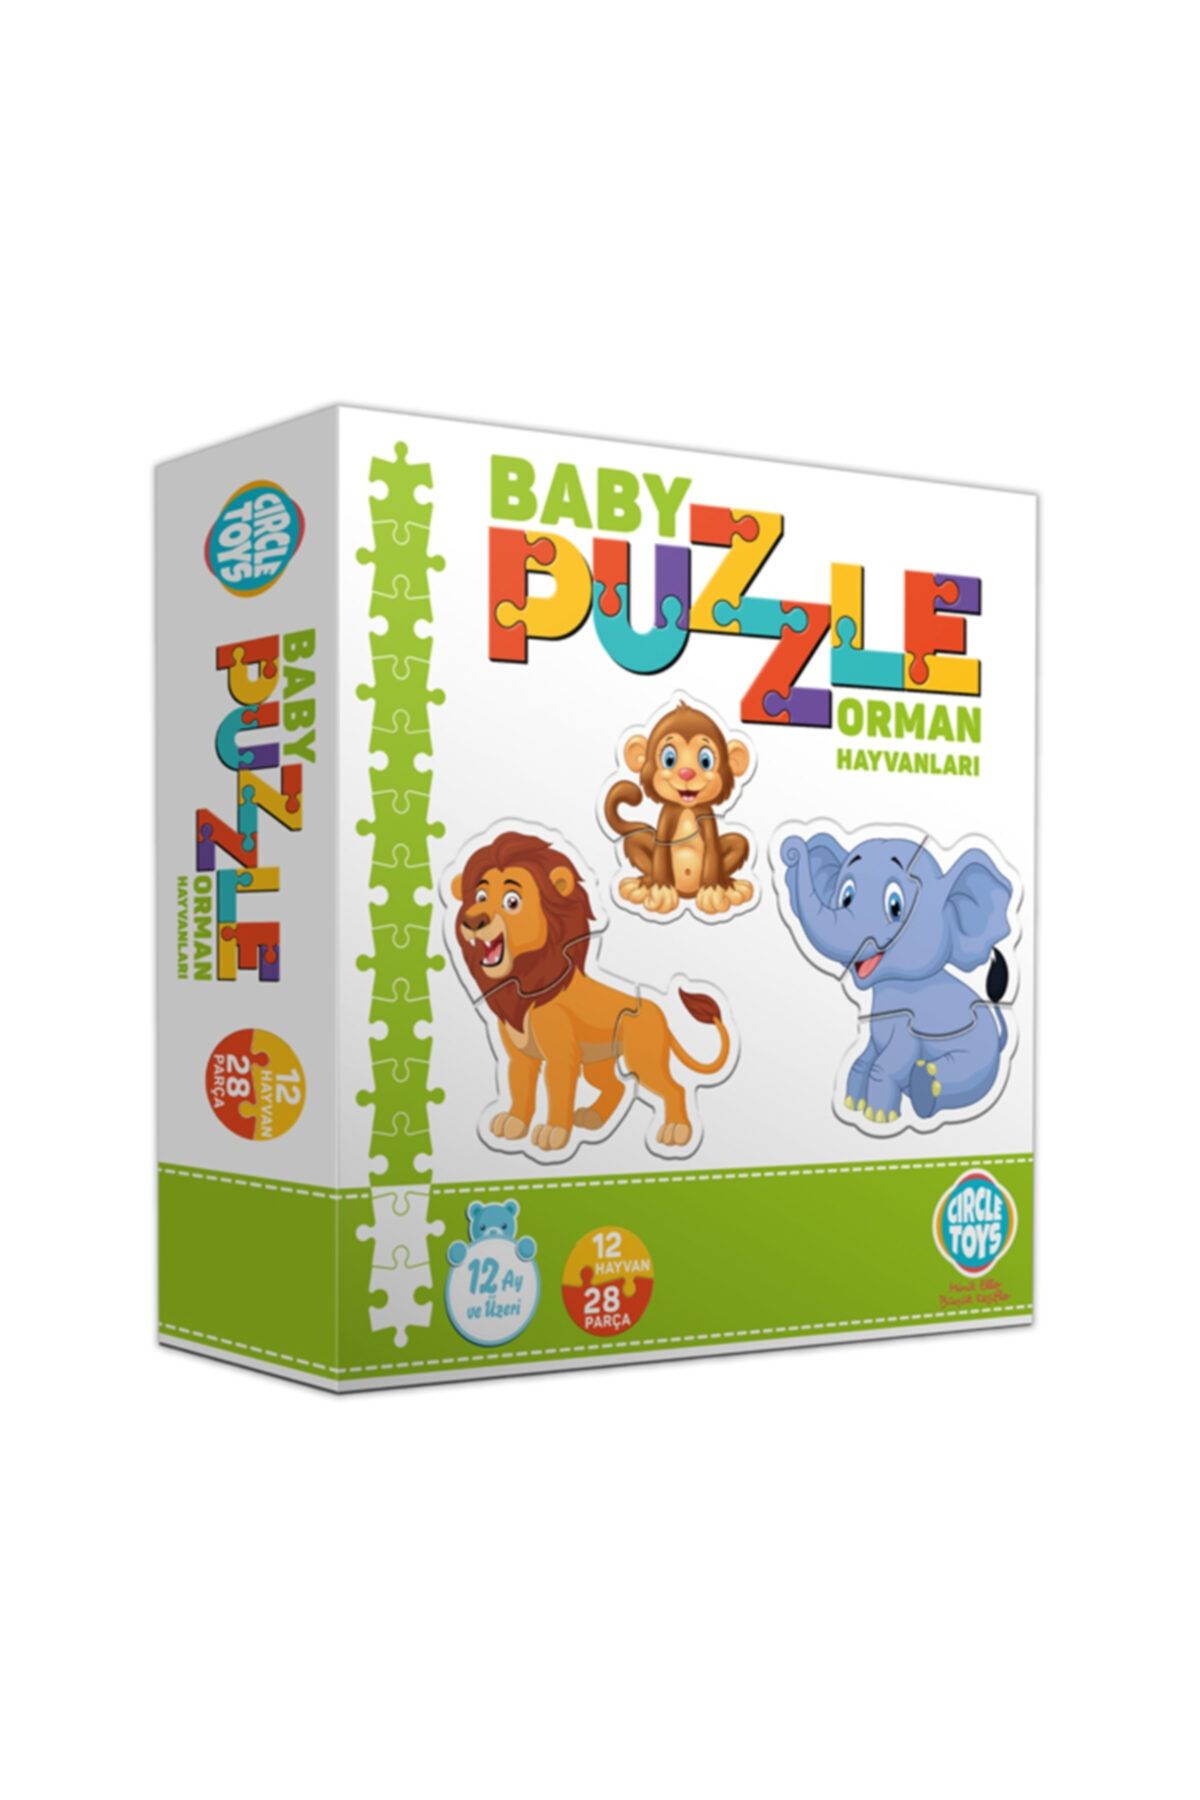 Circle Toys Özlem Toys Baby Puzzle Orman Hayvanları Algılama Koordinasyon Süper Eğlenceli Yapboz +1 Yaş